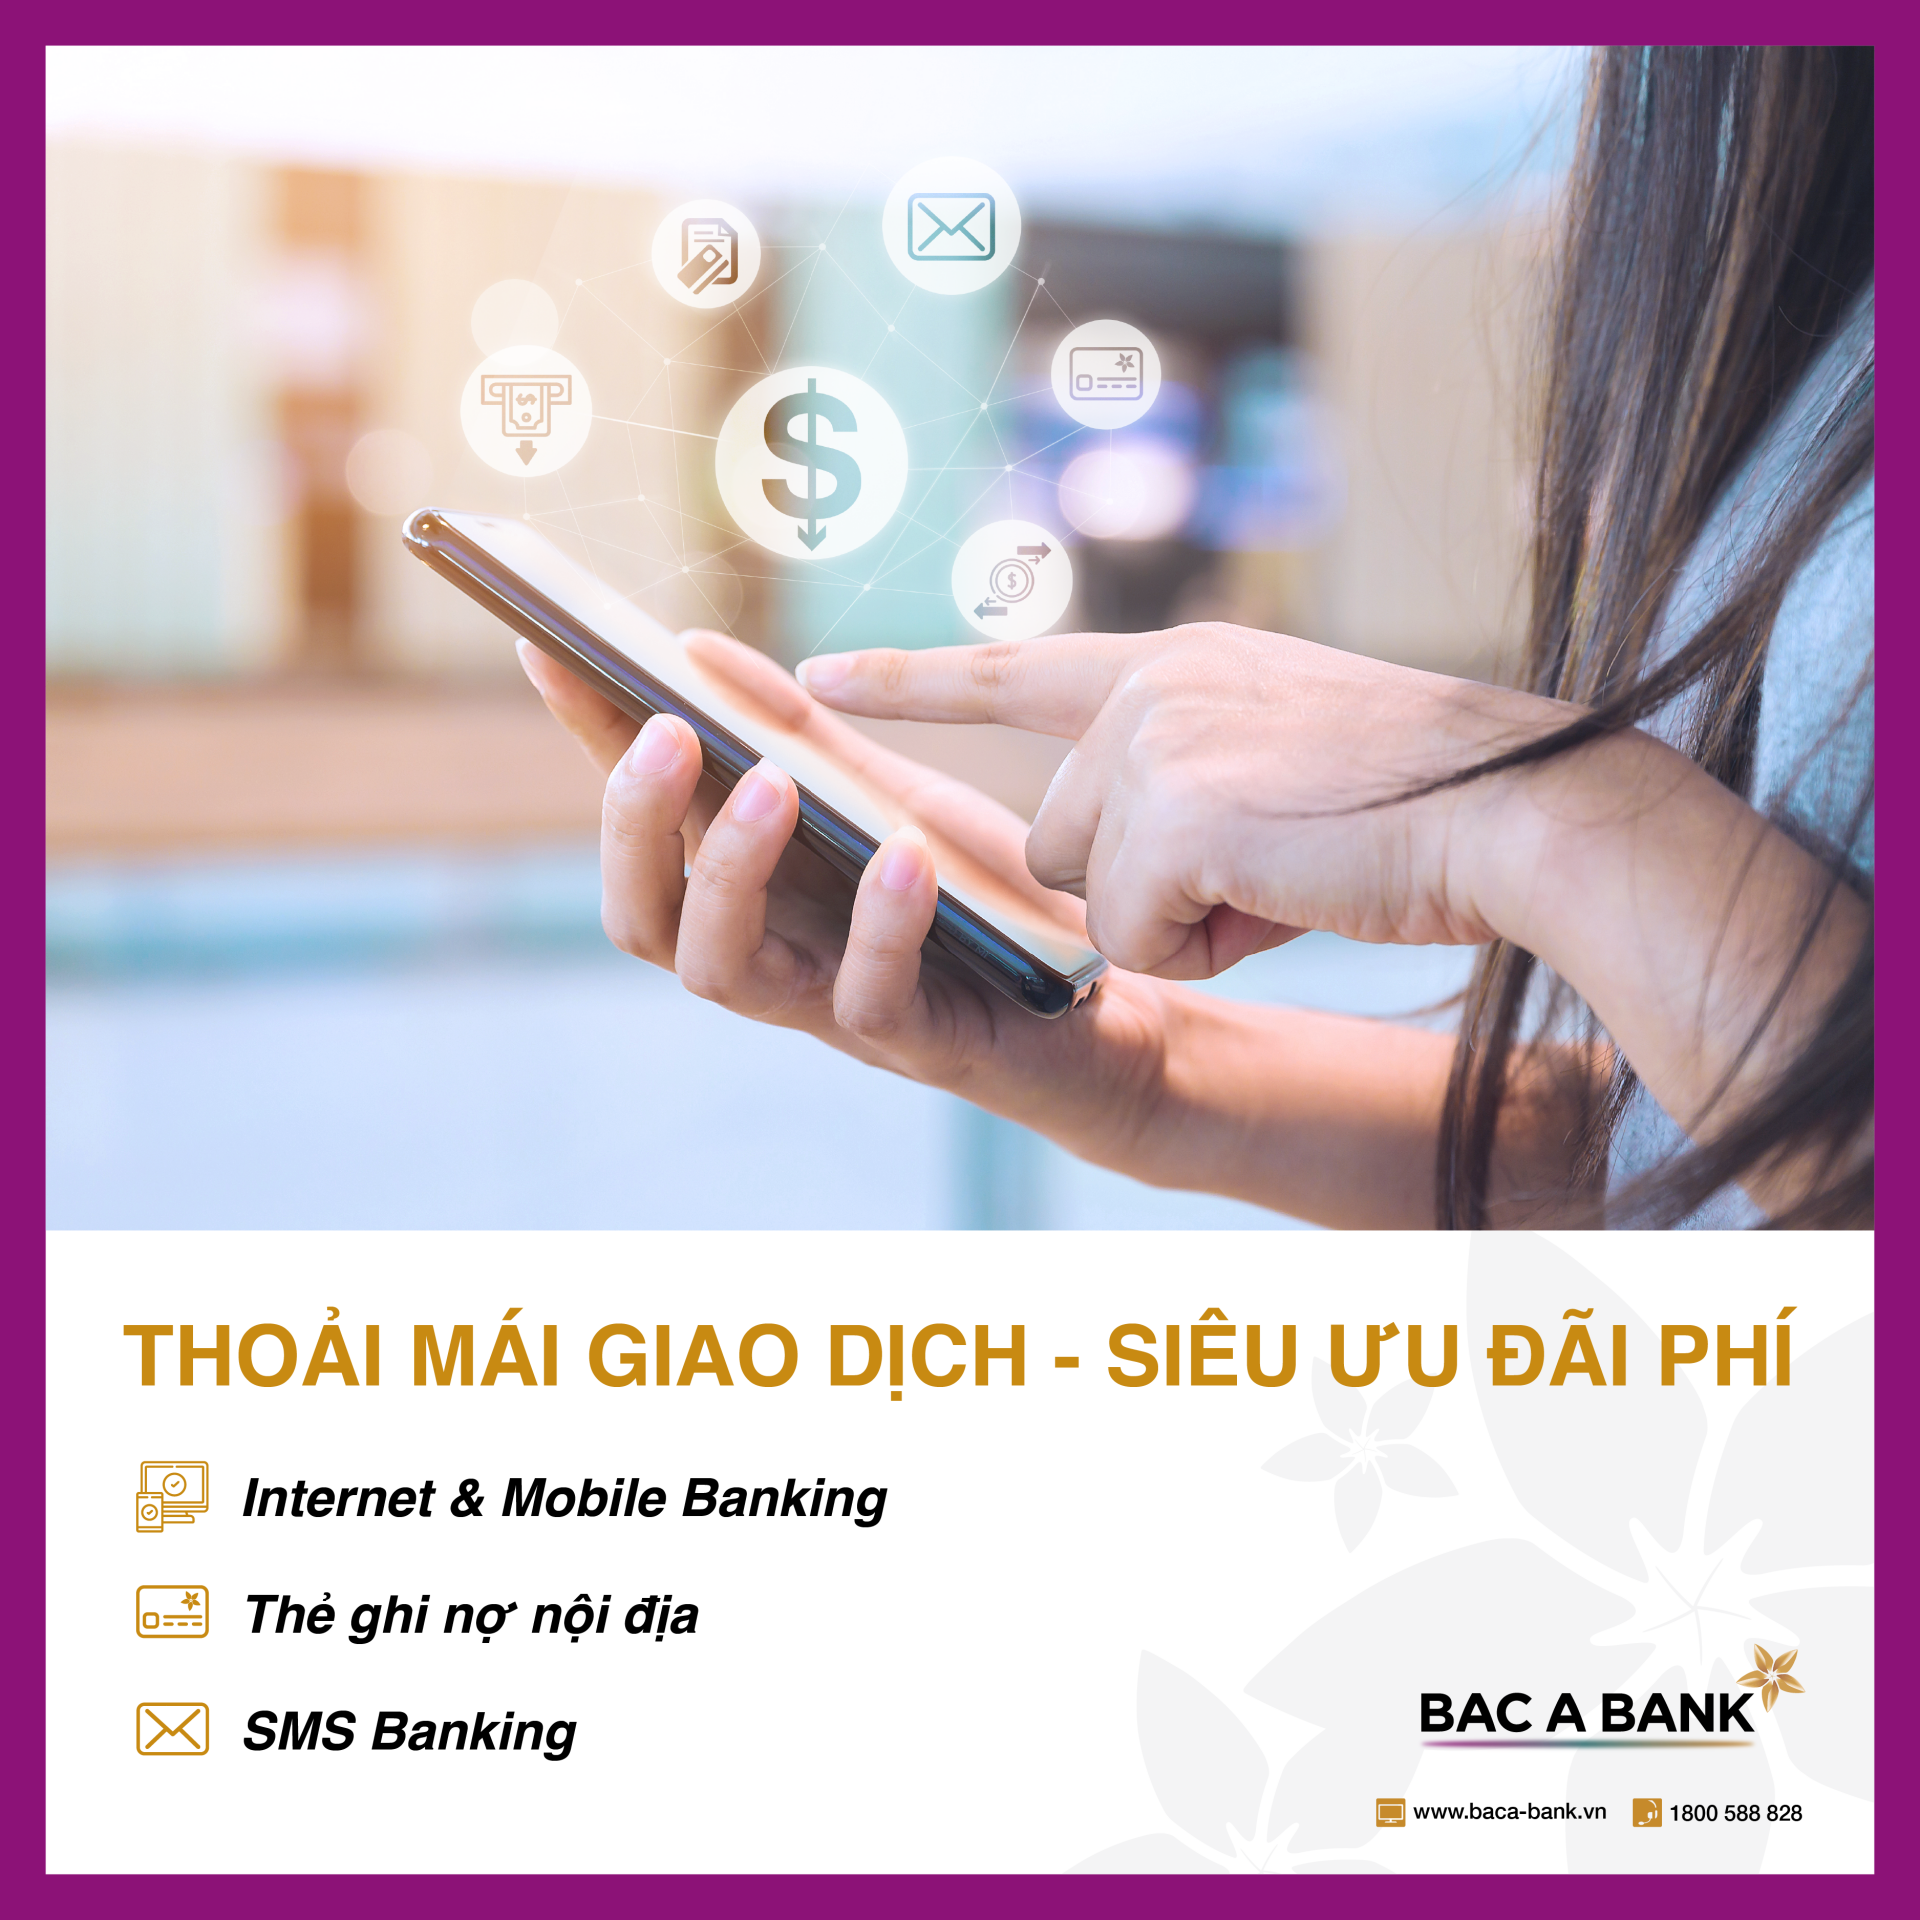 BAC A BANK miễn phí toàn bộ dịch vụ thẻ và ngân hàng điện tử